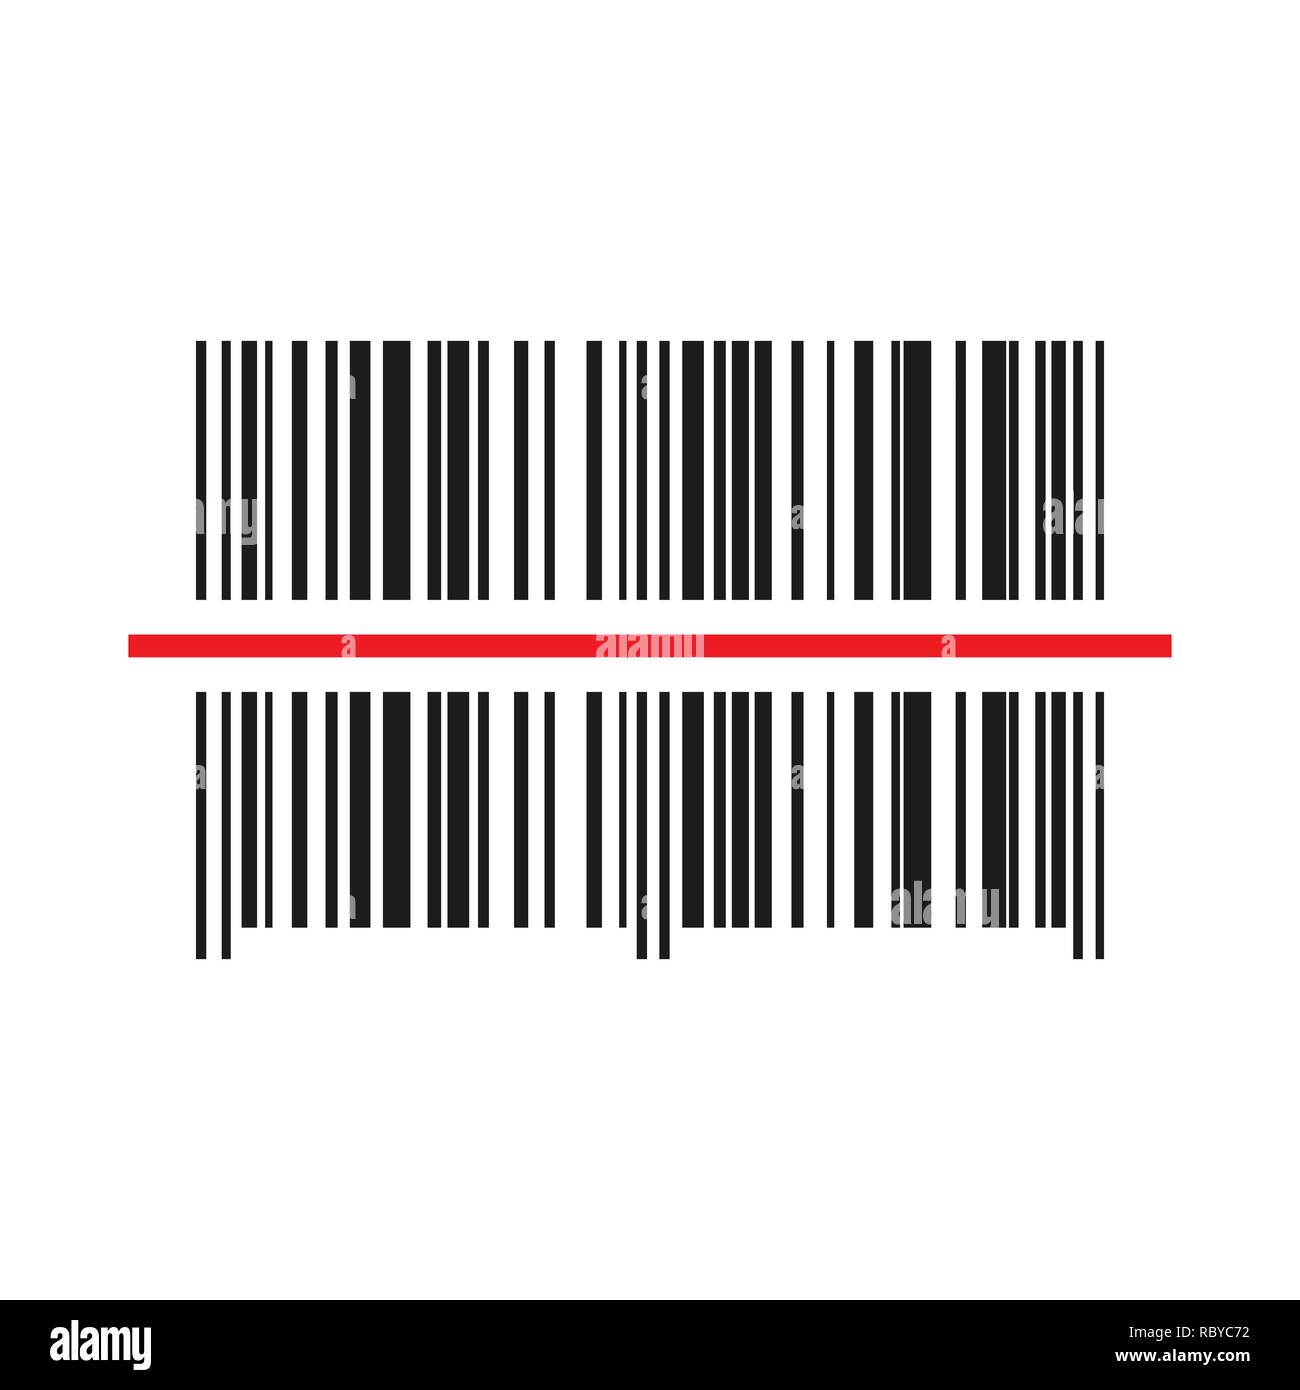 Barcode Scanner Symbol. Vector Illustration. Barcode schwarz mit rotem Laserlicht. Stock Vektor